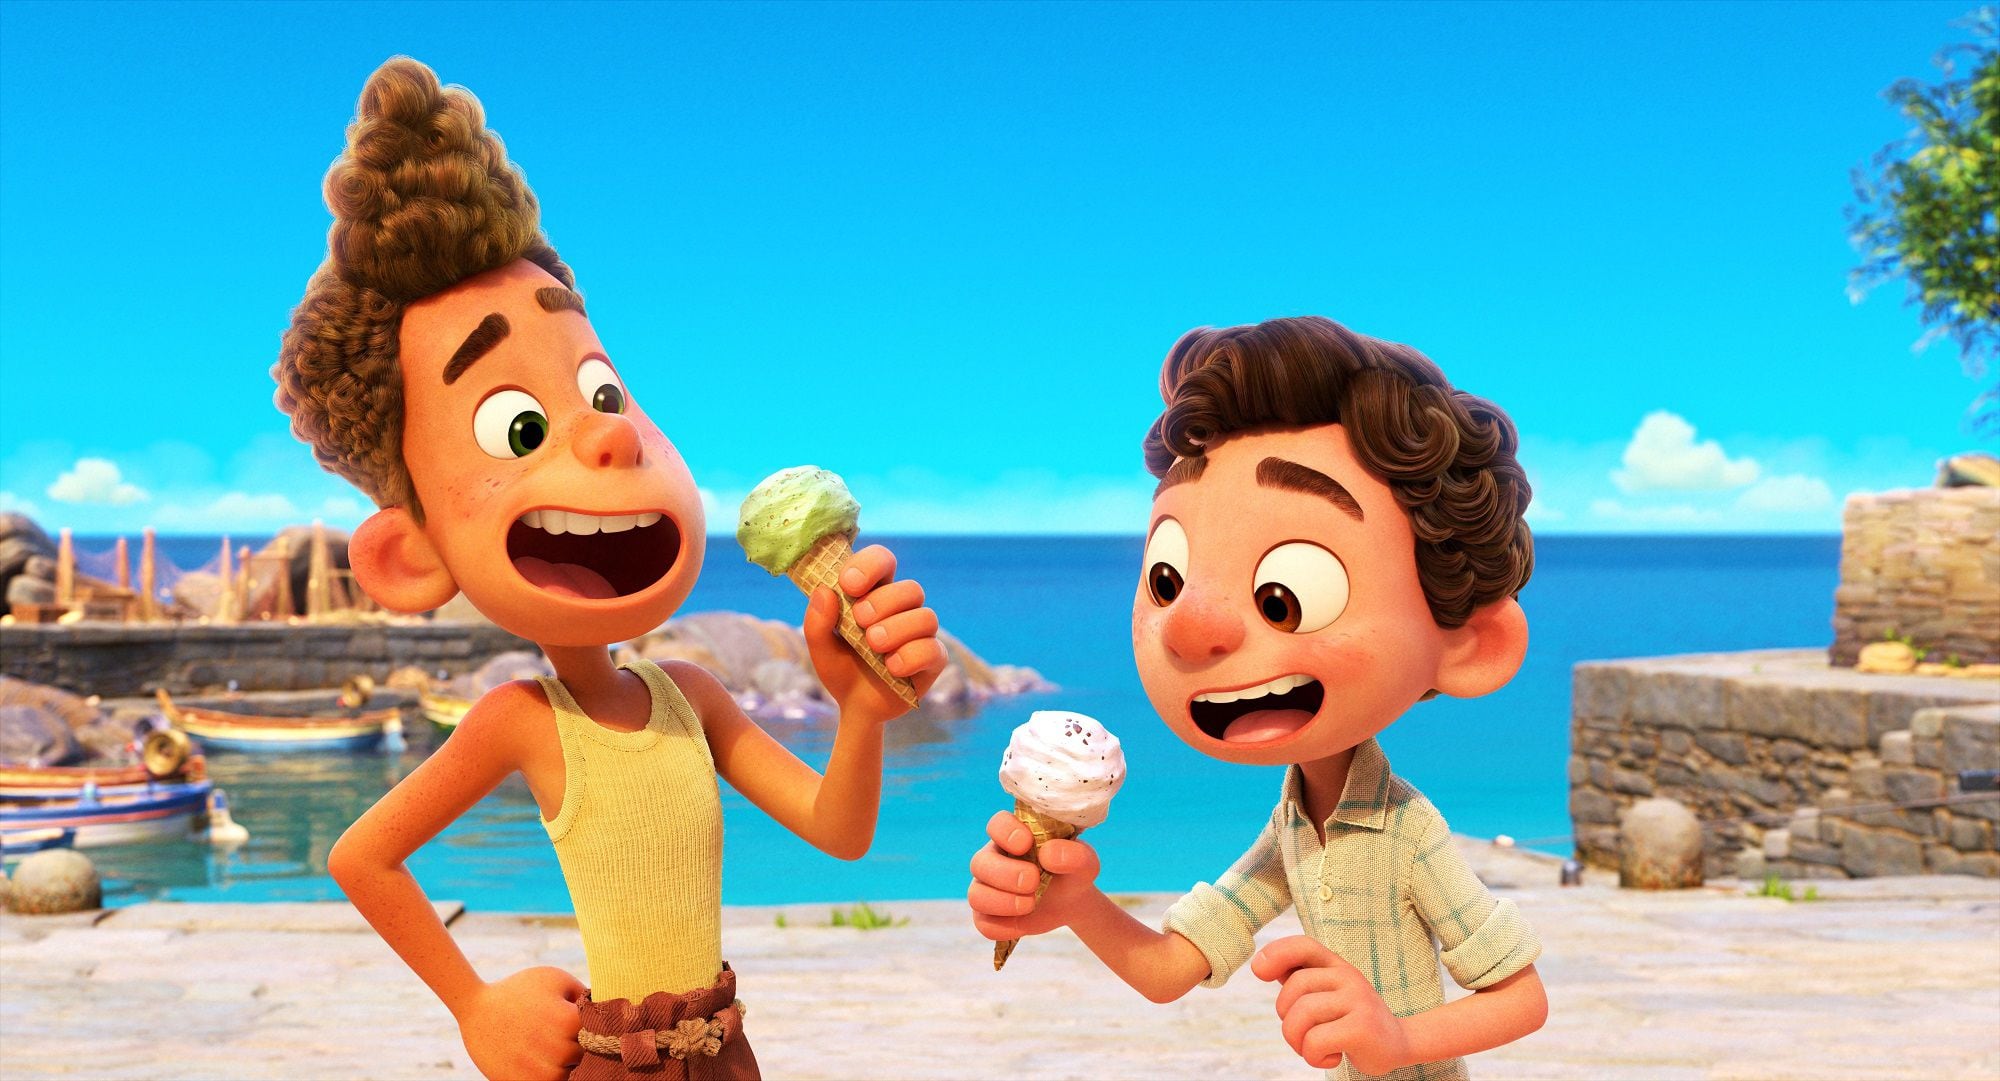 Fotografía cedida por Disney y Pixar donde aparecen los personajes Luca Paguro (d) y Alberto Scorfano (i), durante una escena de la cinta de animación "Luca" que se lanzará a través de la plataforma Disney+ el 28 de junio y será el único estreno que no irá acompañado de un pago añadido. Un verano eterno, la costa italiana, vespas, 'gelatos' y dos amigos que comparten un secreto son los ingredientes de "Luca", la nueva película de Pixar que este viernes toma el relevo a la oscarizada "Soul" con un estreno en la plataforma Disney+. EFE/ Disney/pixar